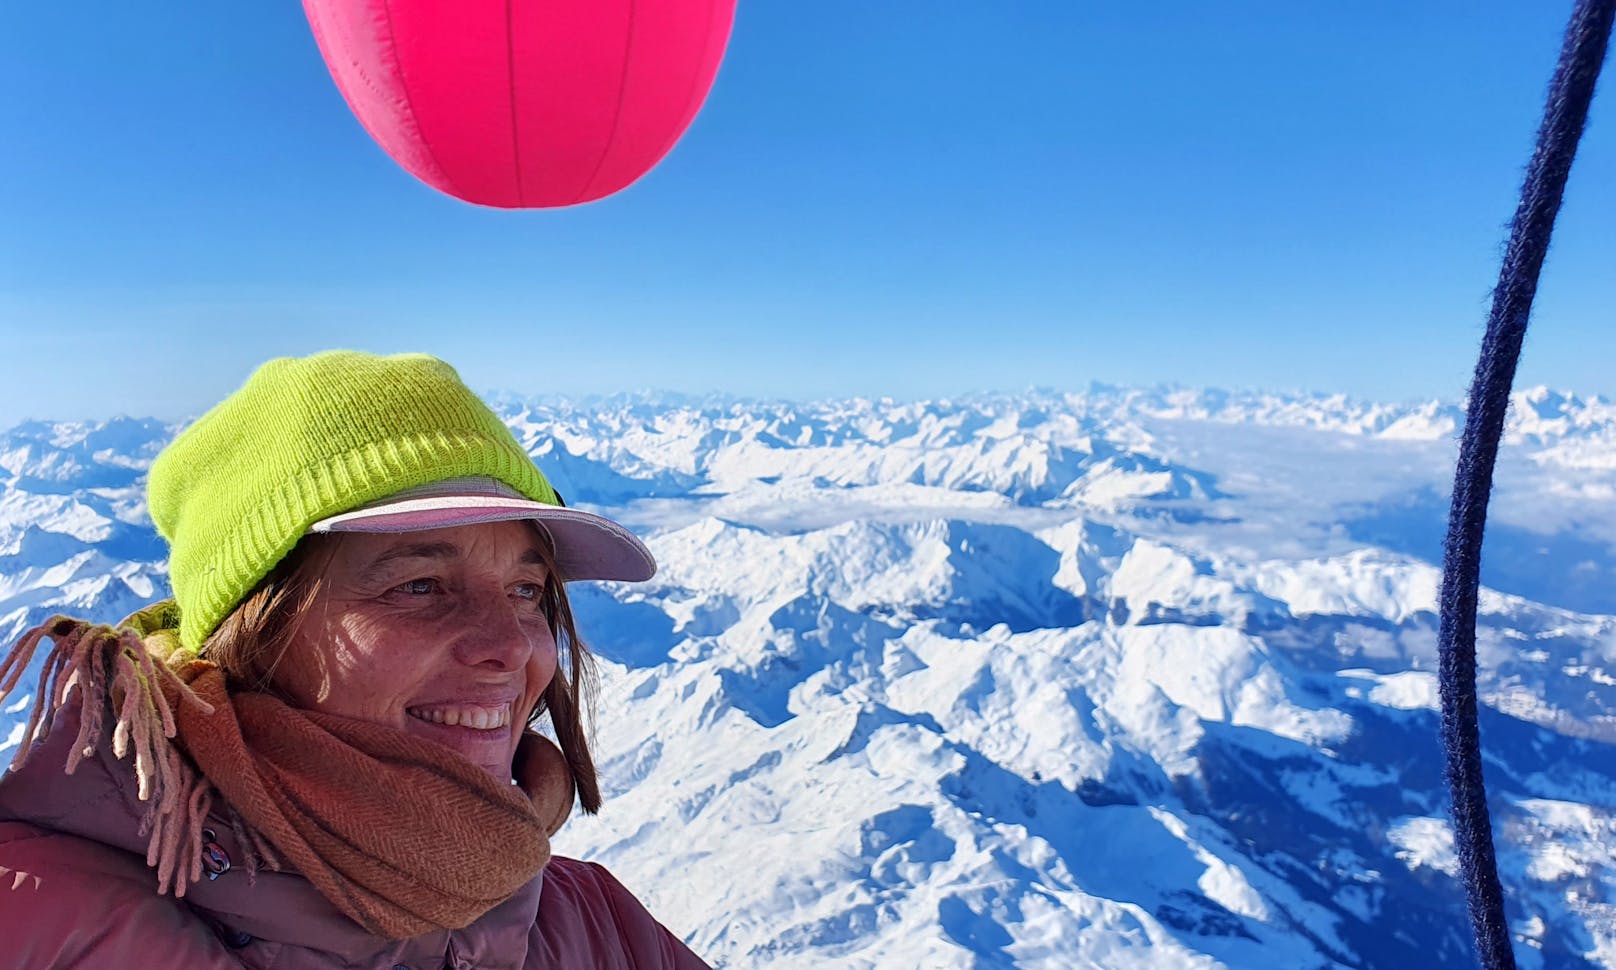 Der Heißluftballon in Form eines Kuheuters wird - bei gutem Wetter - am kommenden Nationalfeiertag über Wien schweben. Die "soziale Skulptur" der Wiener  Künstlerin Barbara Anna Husar (Bild) soll für den Wertewandel stehen.